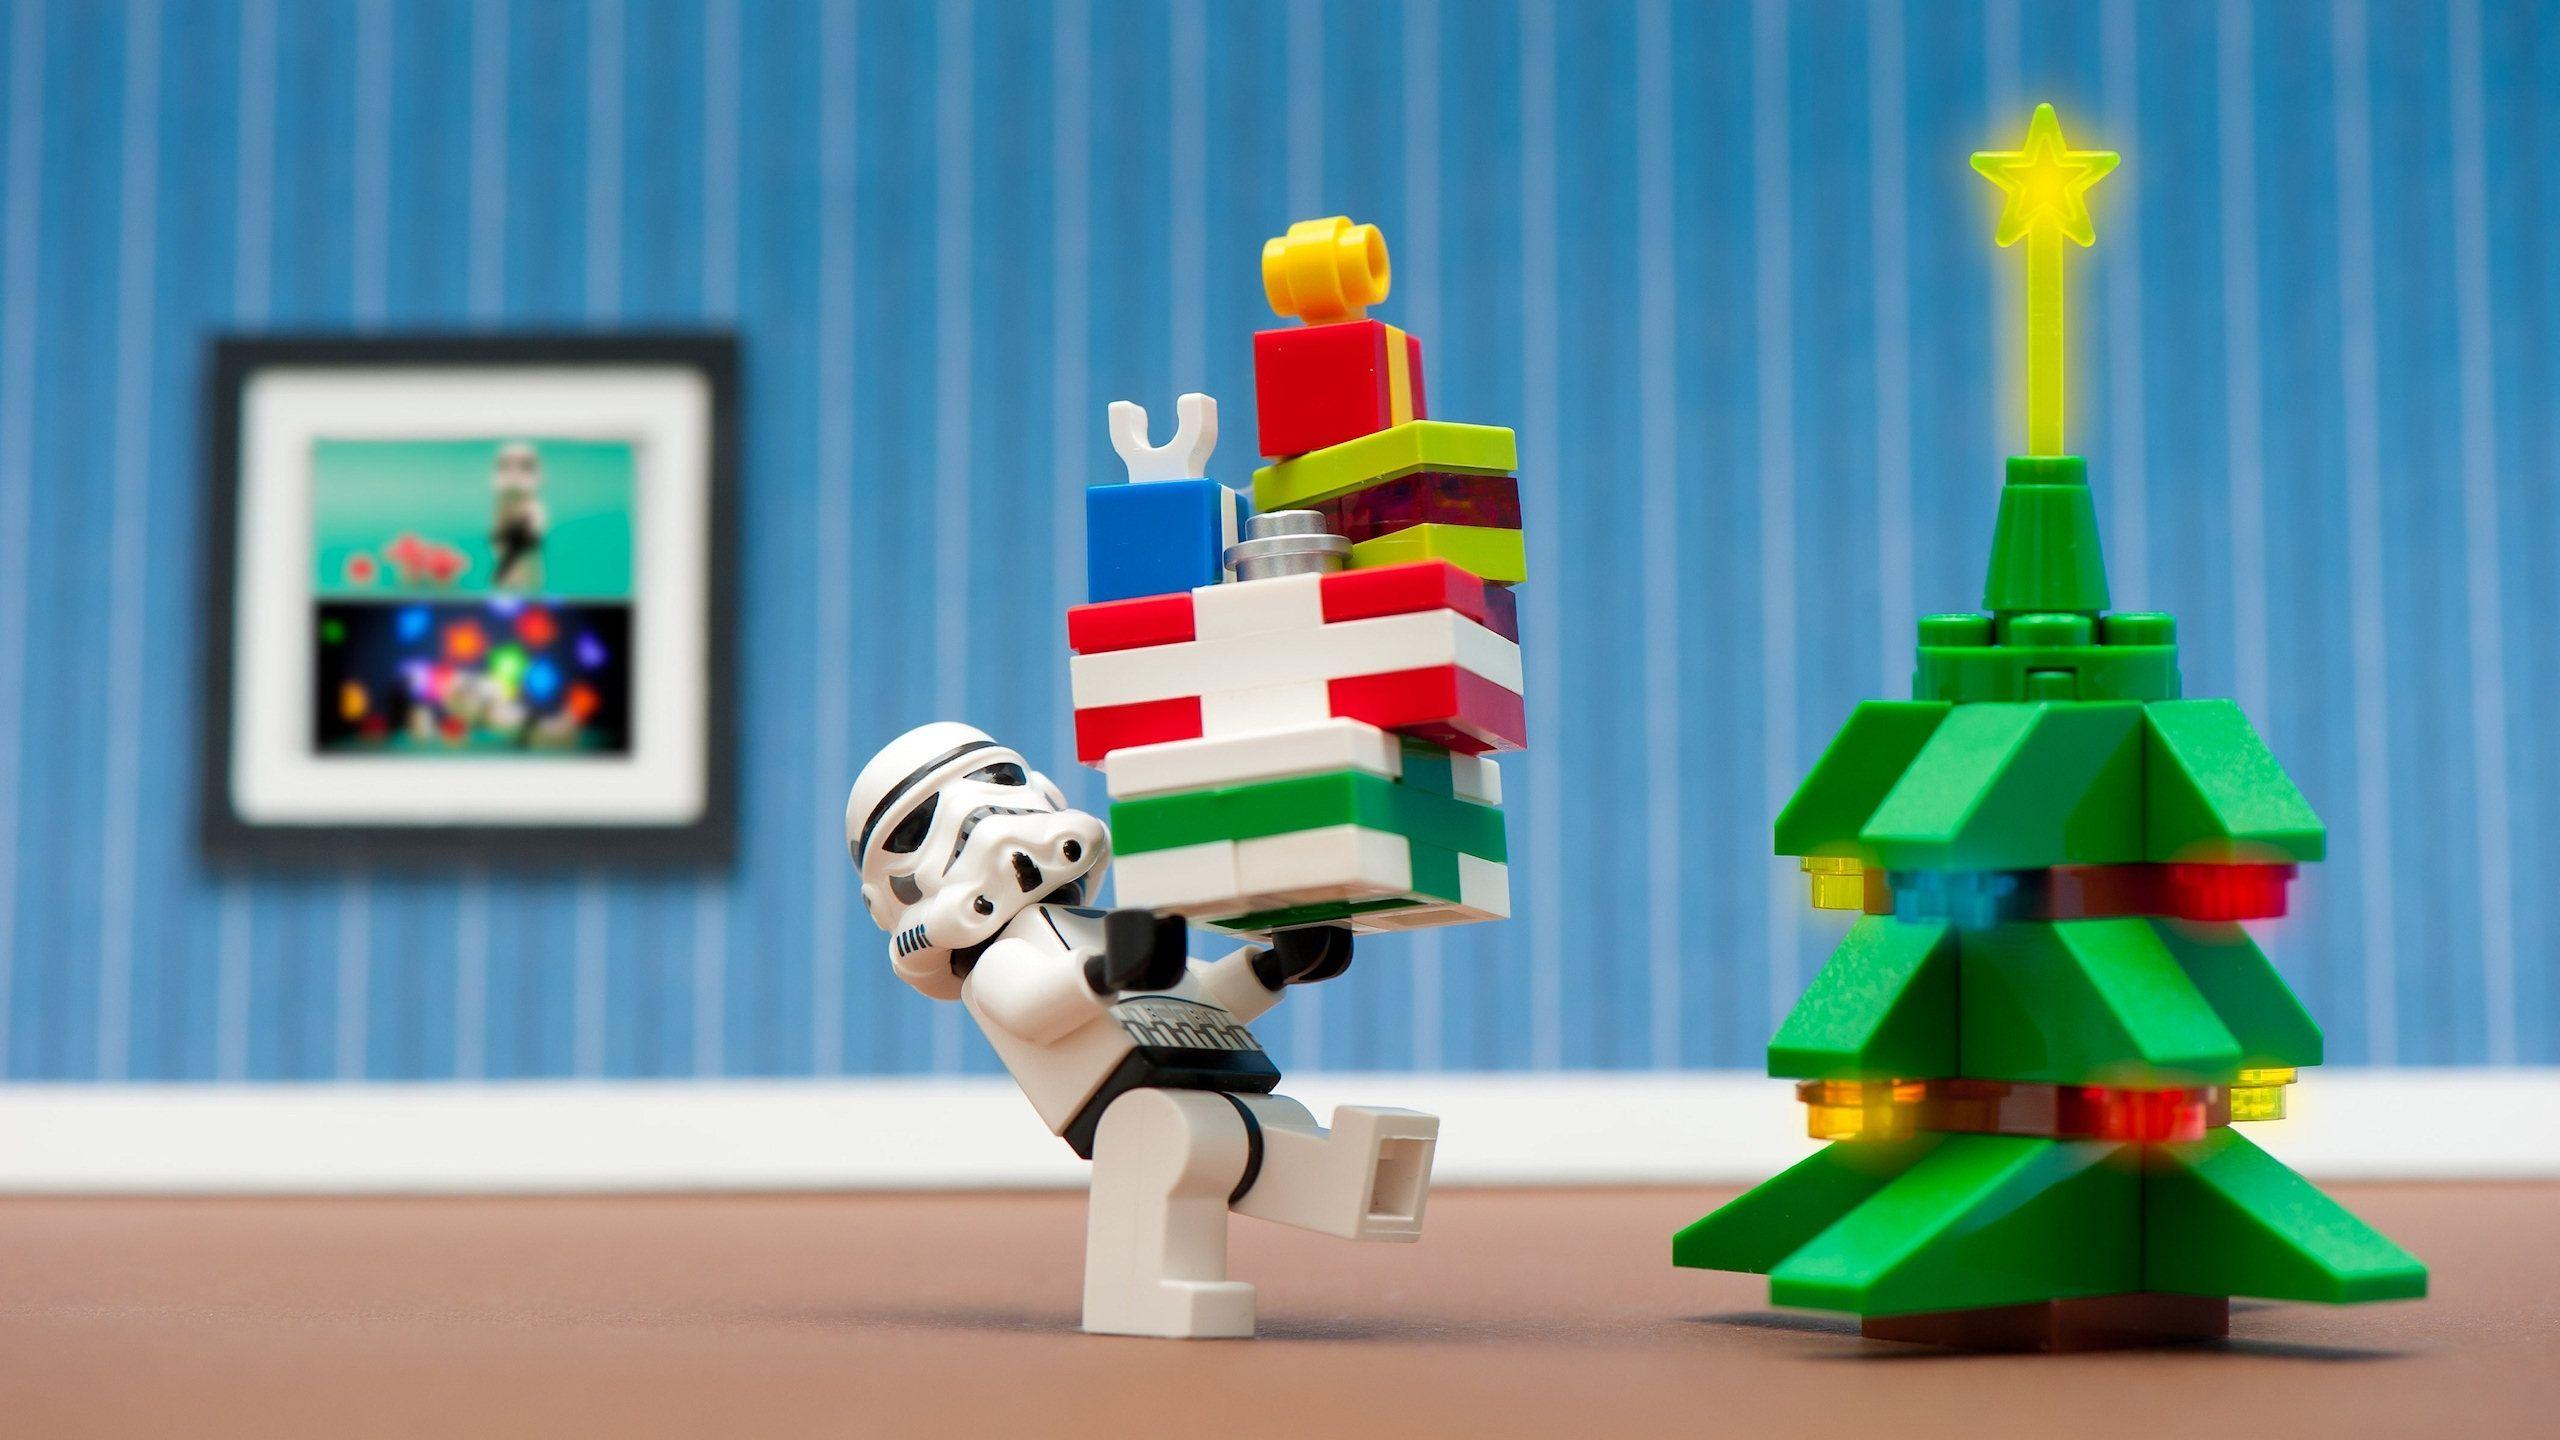 Giáng Sinh sẽ không còn buồn chán với bộ sưu tập hình nền Lego đầy màu sắc và vui nhộn. Hãy cùng trang trí cho máy tính, điện thoại của mình với những mẫu hình nền Lego thú vị, và tận hưởng không khí lễ hội sôi động. Bộ sưu tập chắc chắn sẽ làm bạn rất hài lòng!